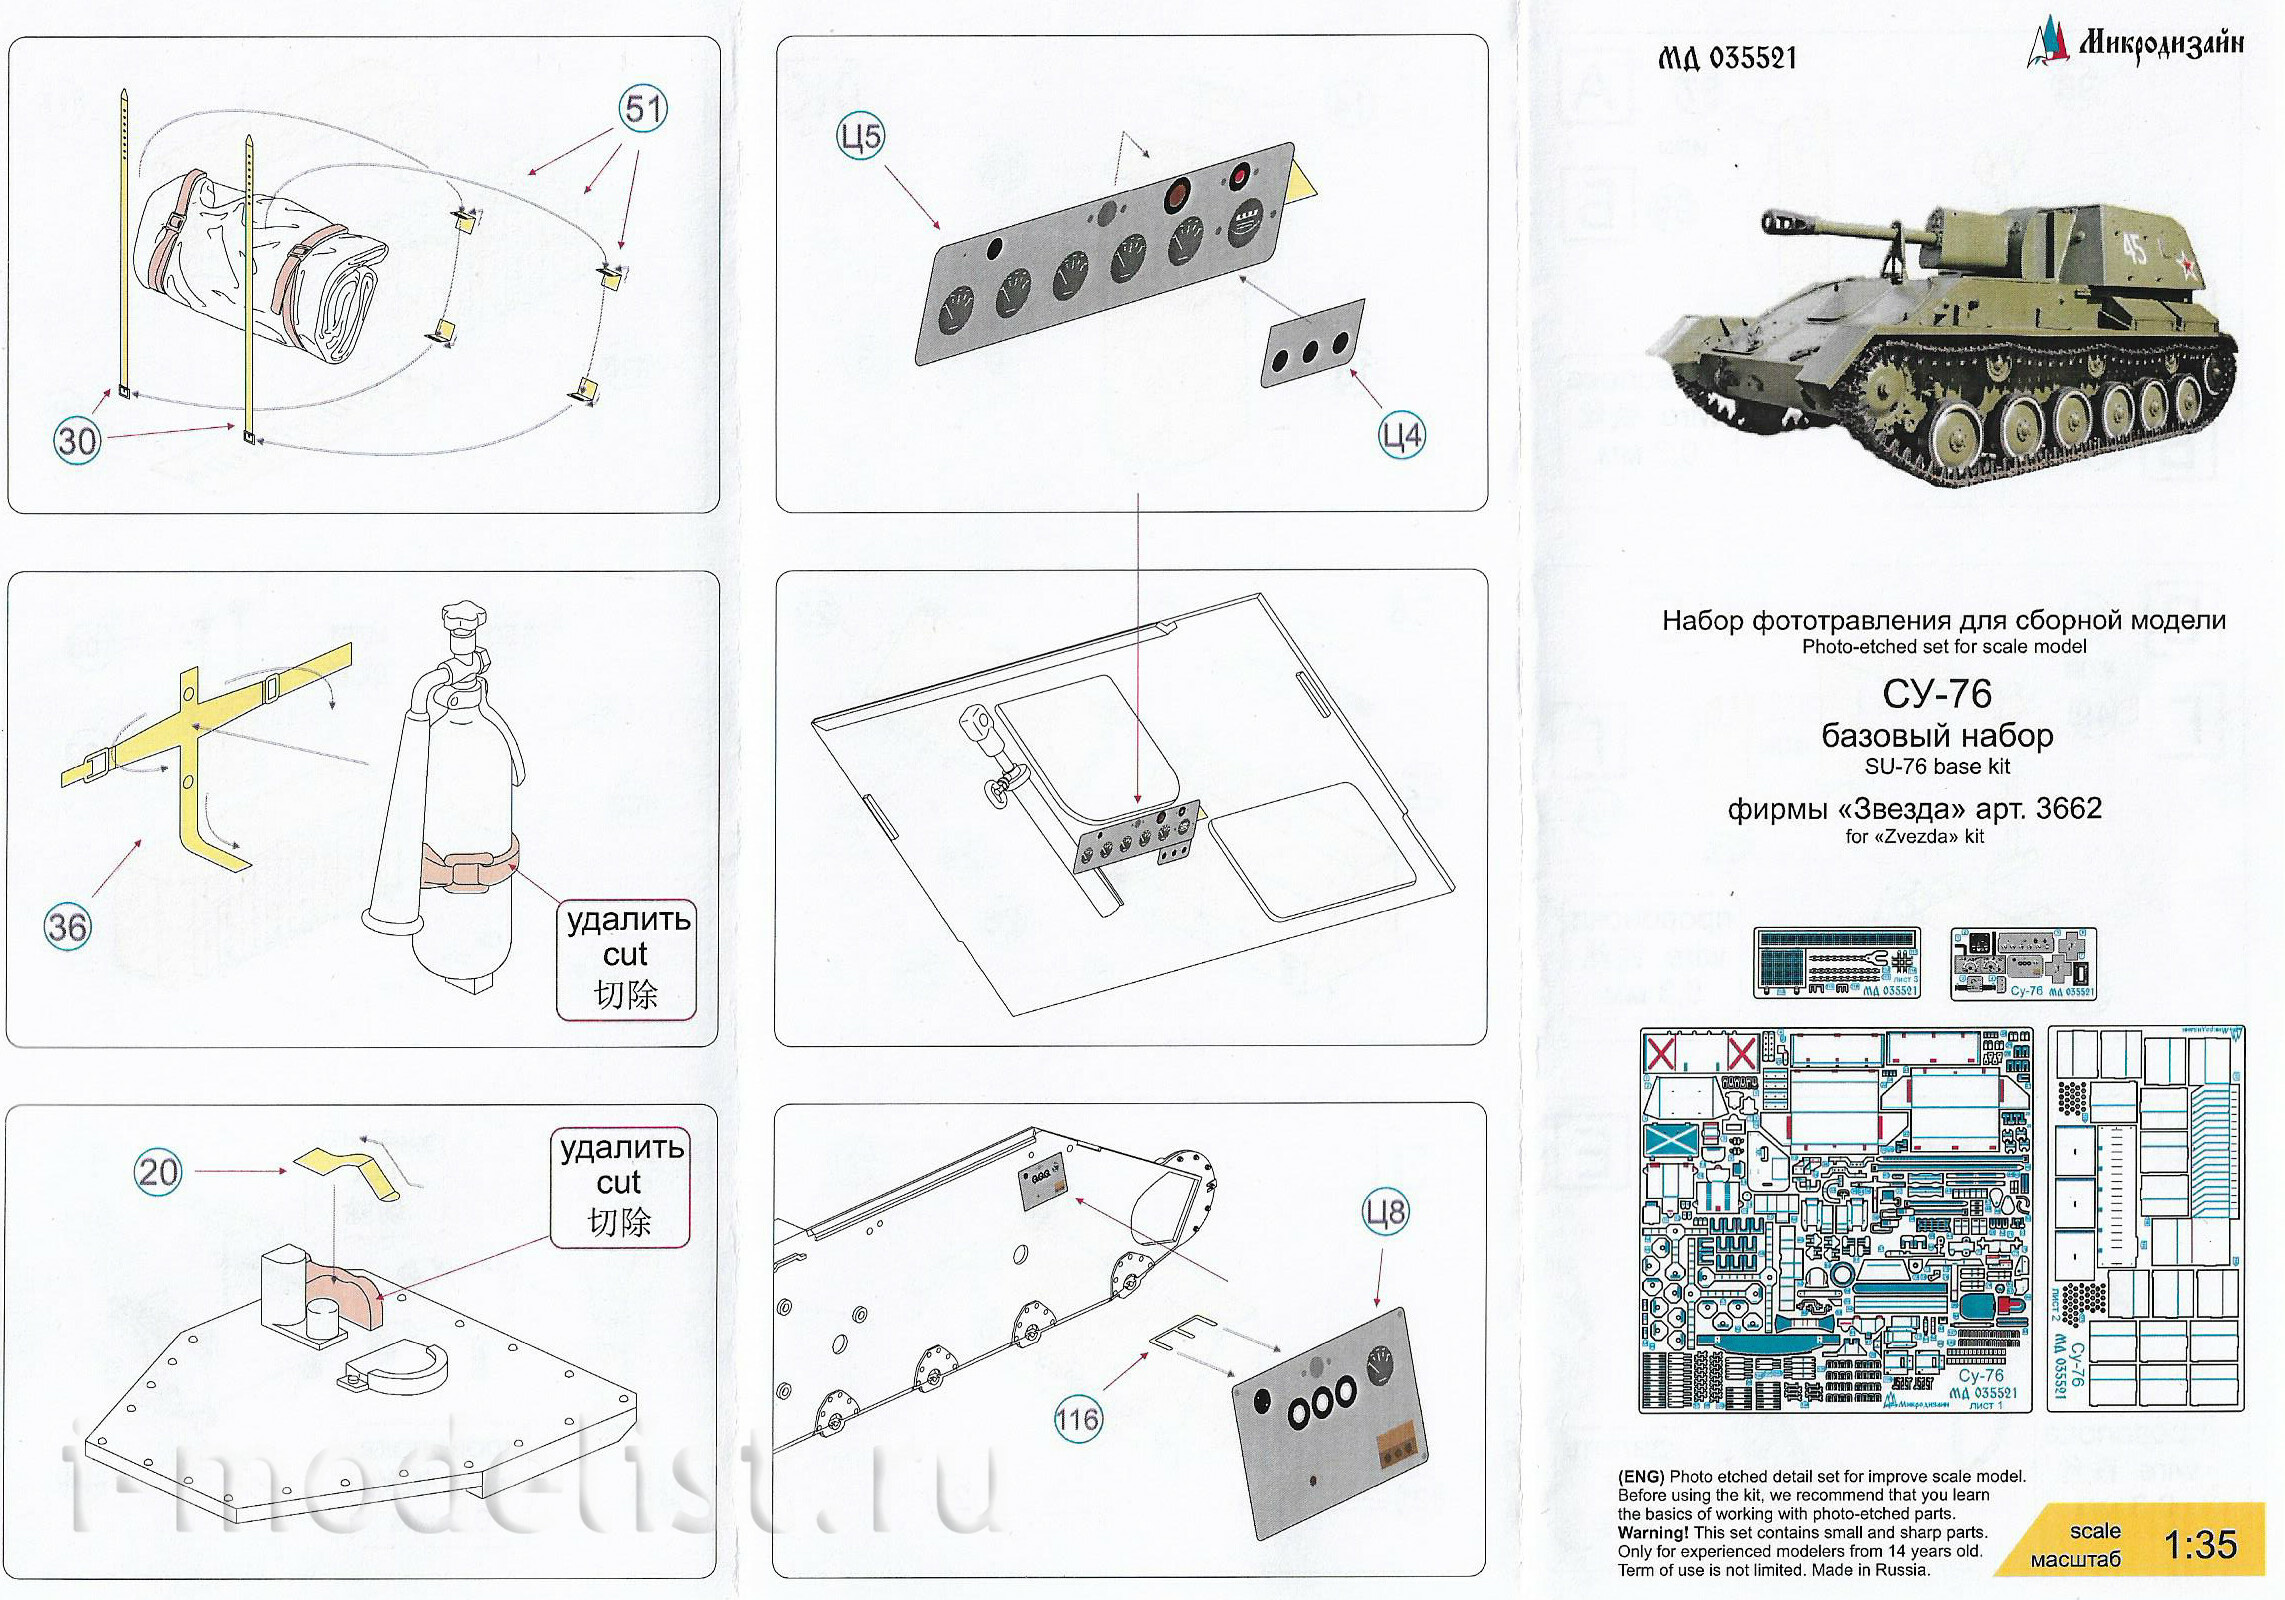 035521 Micro Design 1/35 Basic kit for SU-76 (Zvezda)